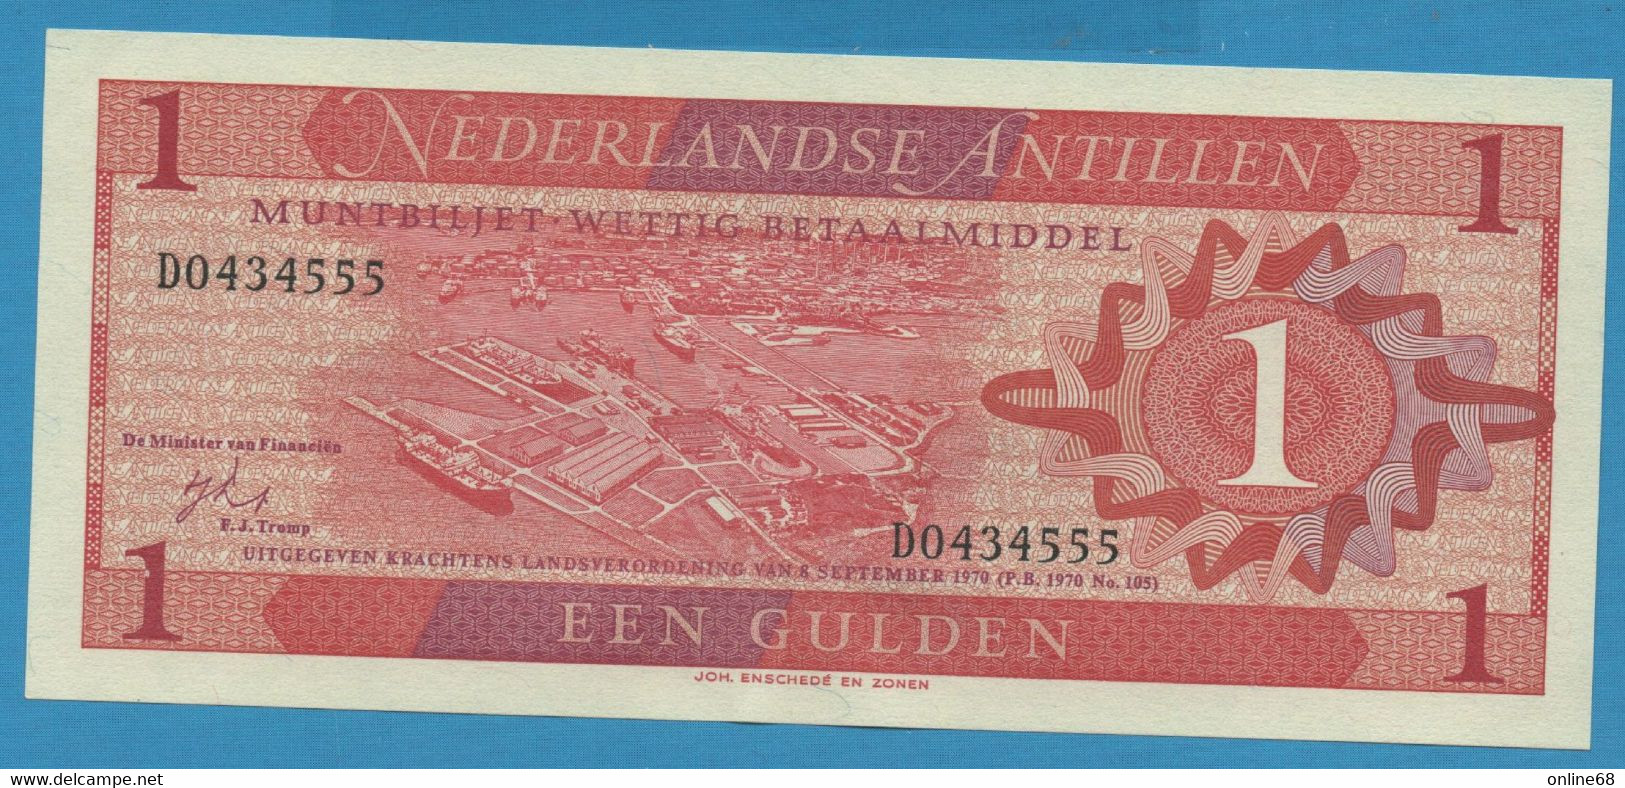 NEDERLANDSE ANTILLEN 1 GULDEN 08.09.1970 # D0434555 P# 20 Willemstad Curaçao - Nederlandse Antillen (...-1986)